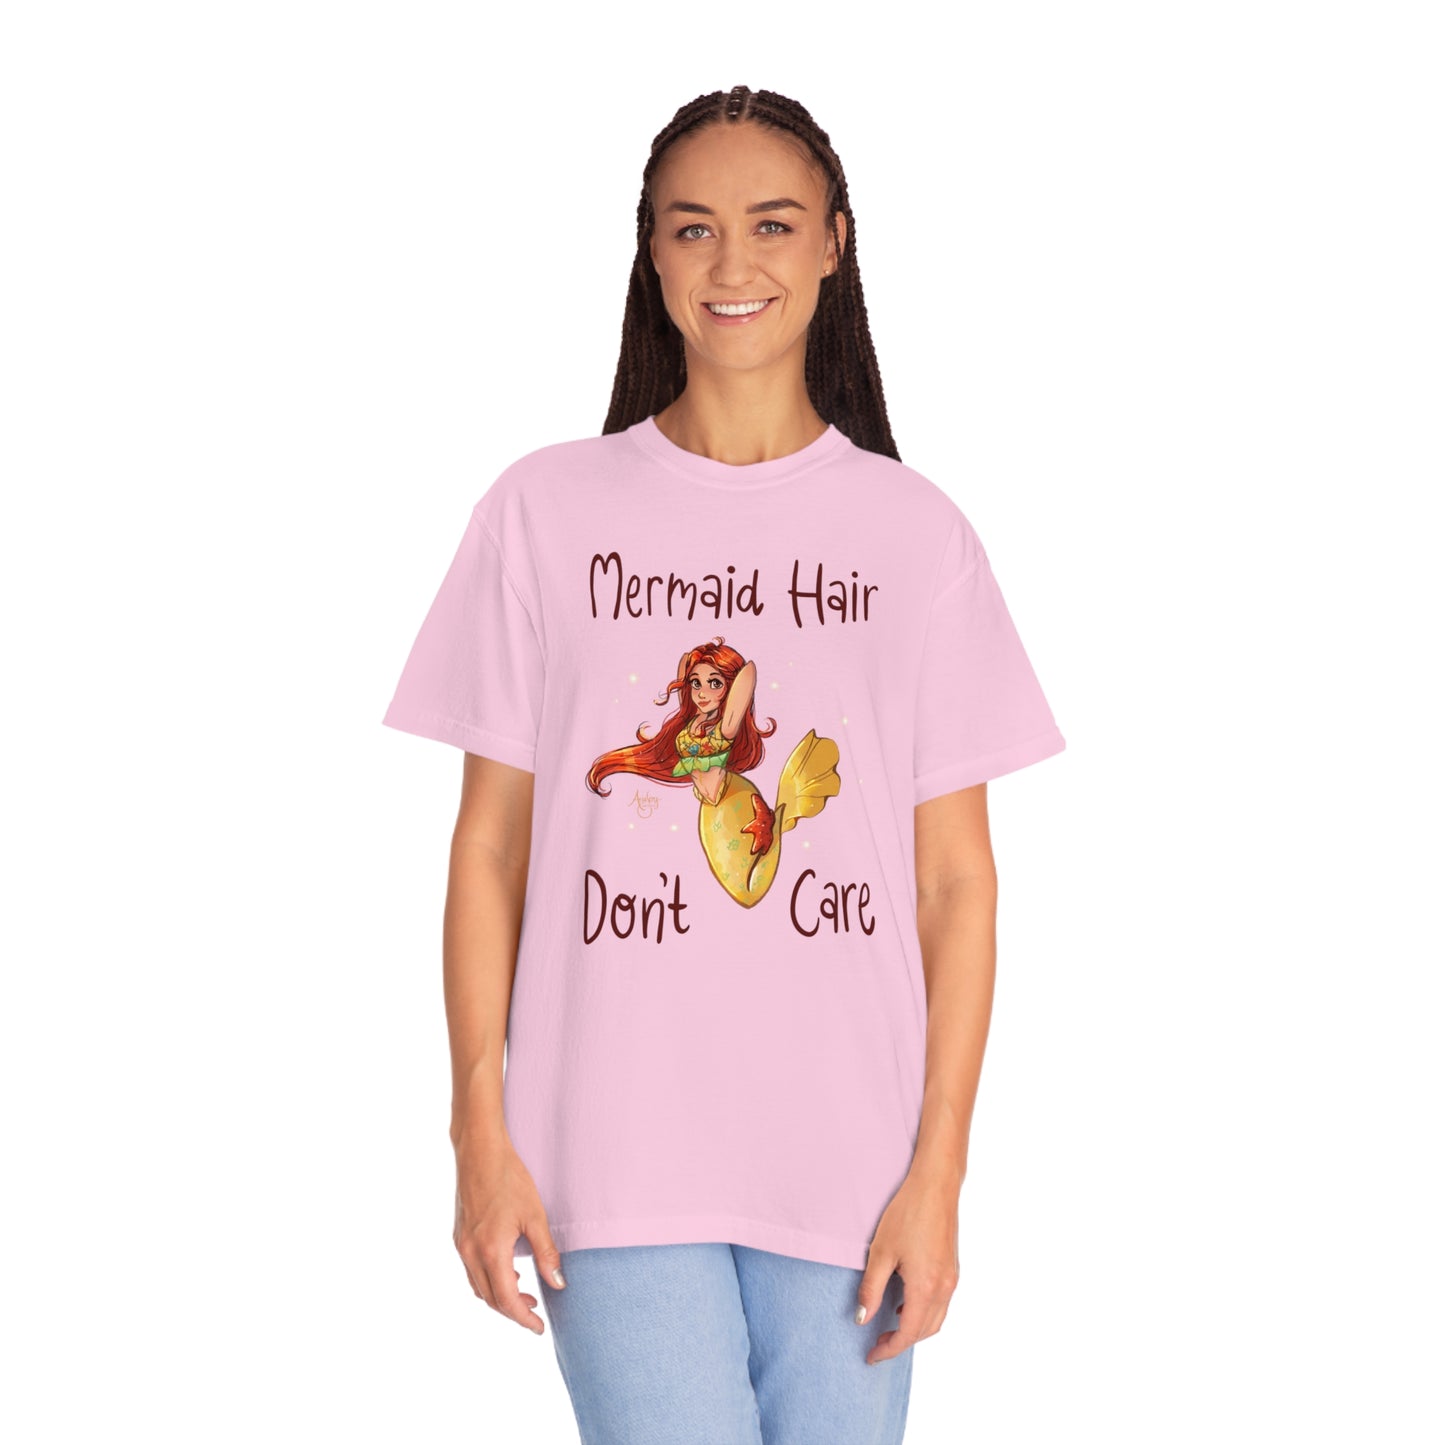 Mermaid Hair Don't Care T-shirt